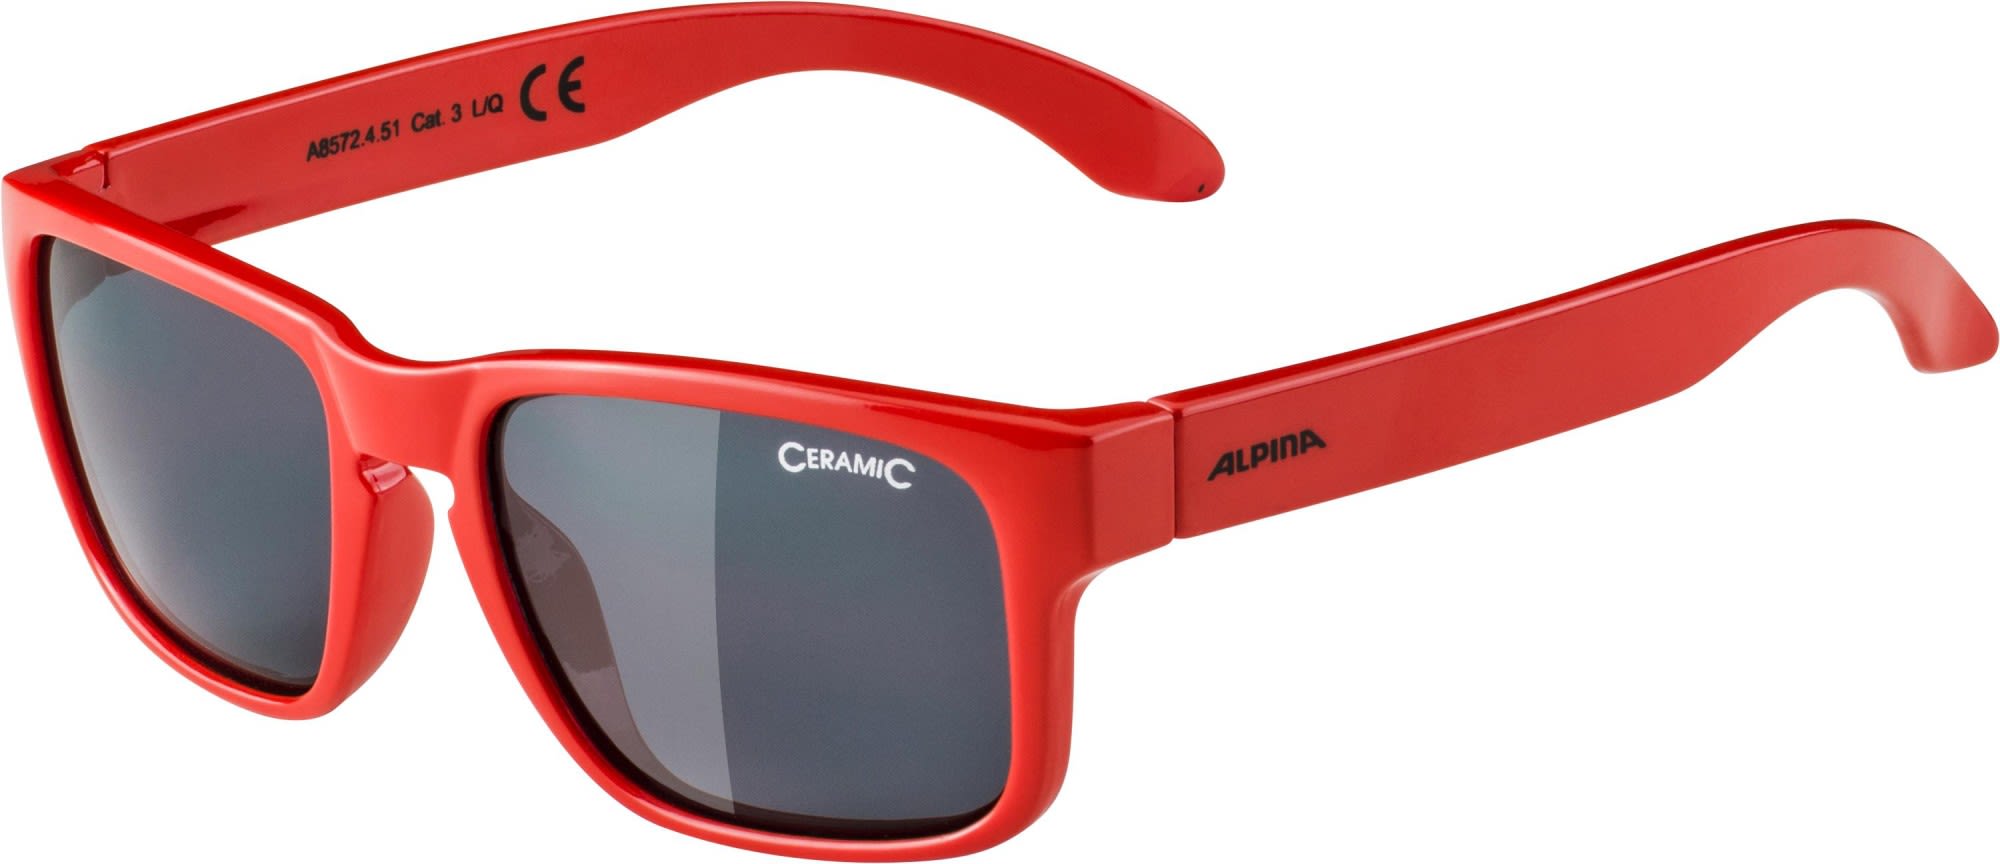 Alpina Leichte komfortable Jungen Sonnenbrille Red - Black